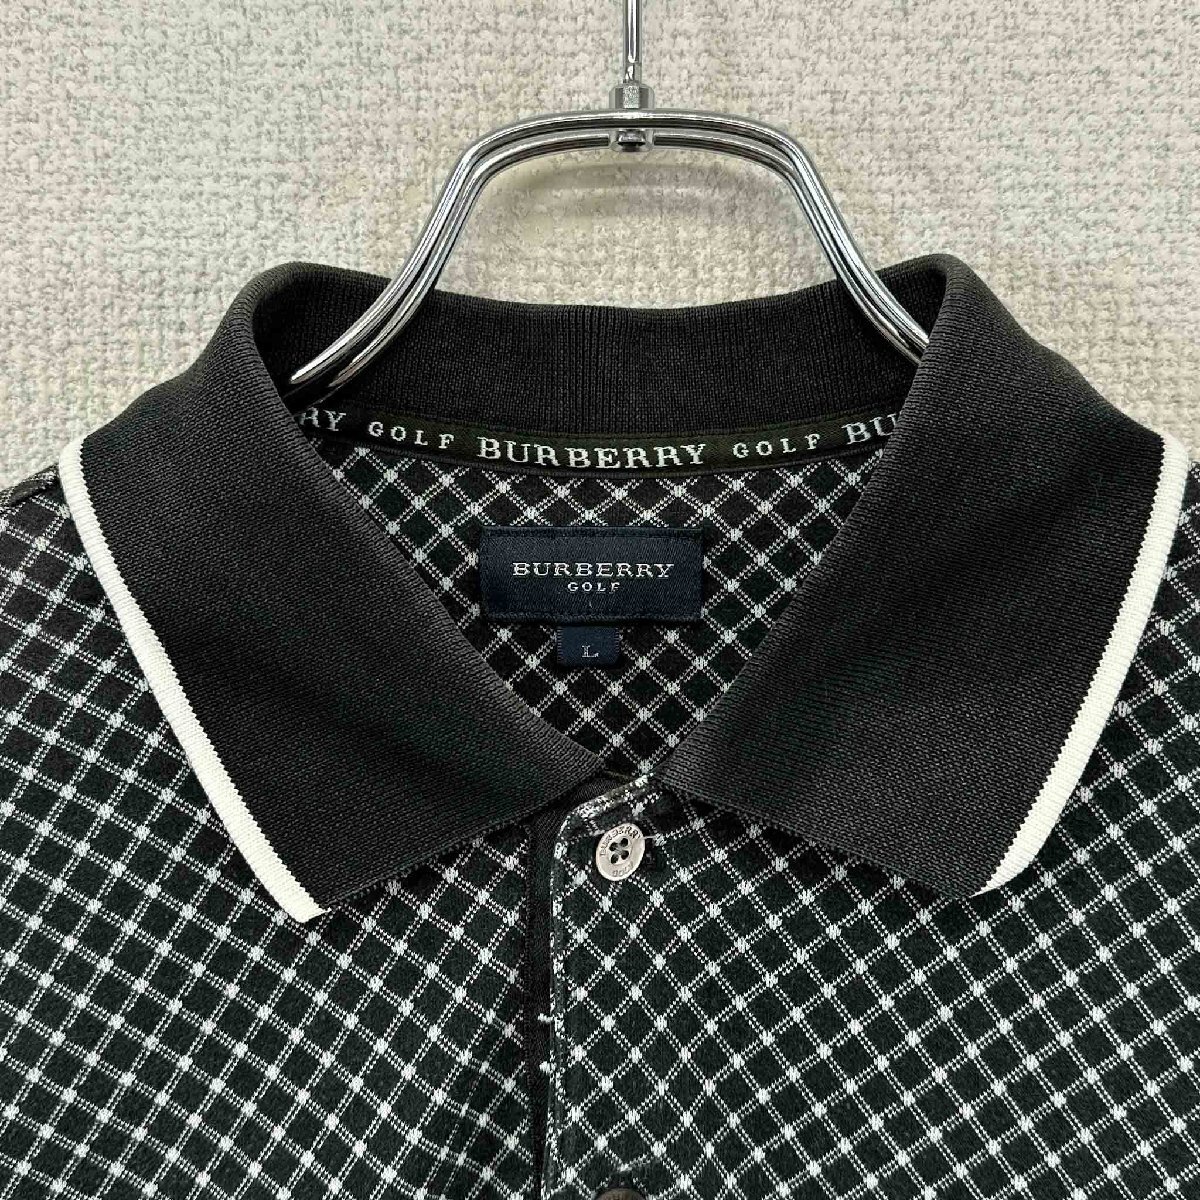 BURBERRY GOLF Burberry Golf рубашка-поло с длинным рукавом черный размер L общий рисунок tops мужской Vintage ne